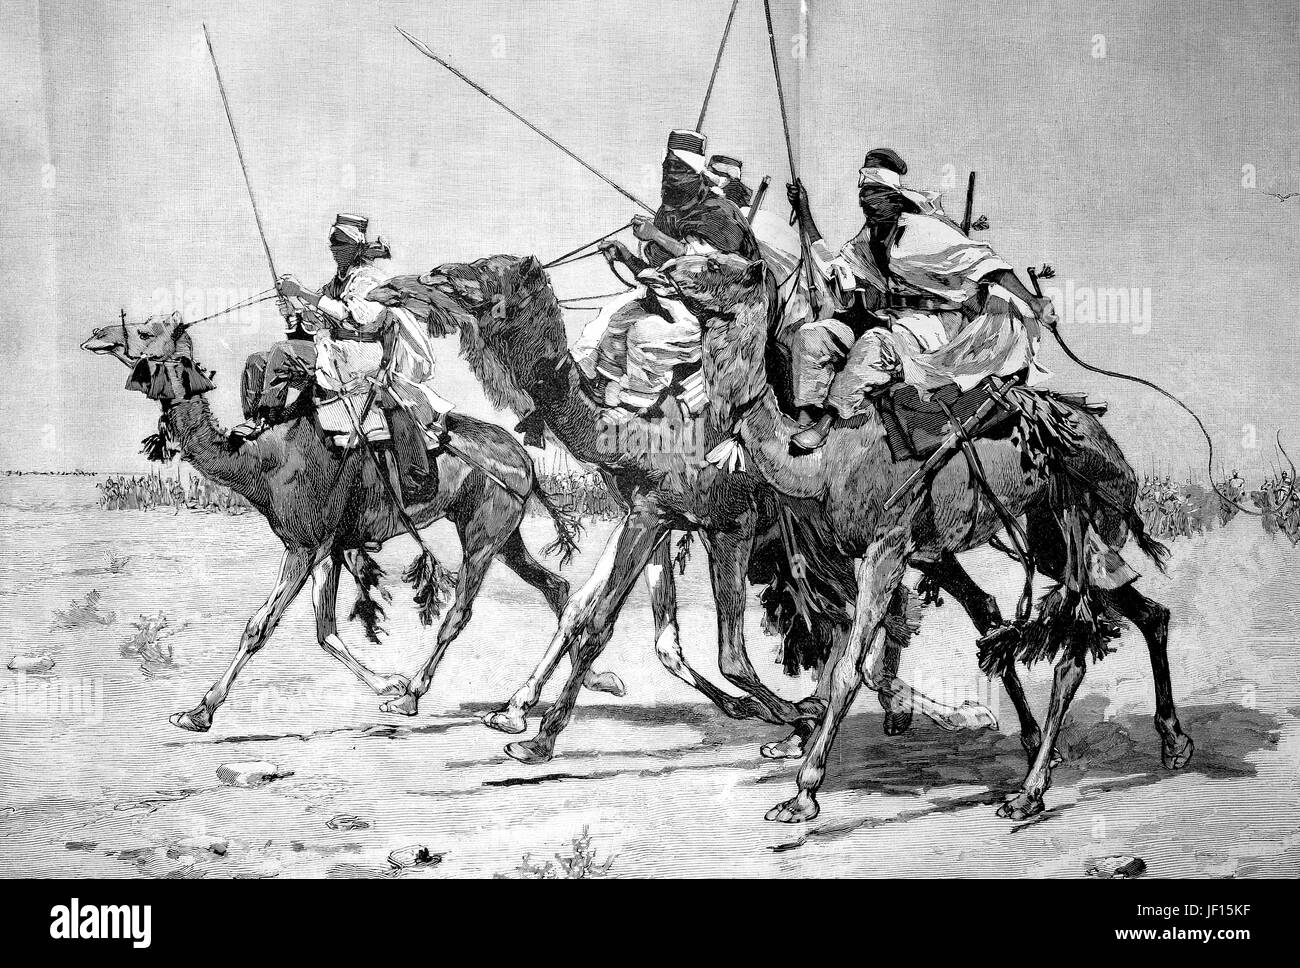 Historische Darstellung der einen Kamelritt der Tuareg in Libyen, die Hauptrolle einer fortschreitenden militärischen Formation, Vorhut, Avantgarde, verbesserte digitale Reproduktion aus einer Originalgraphik von 1888 Stockfoto